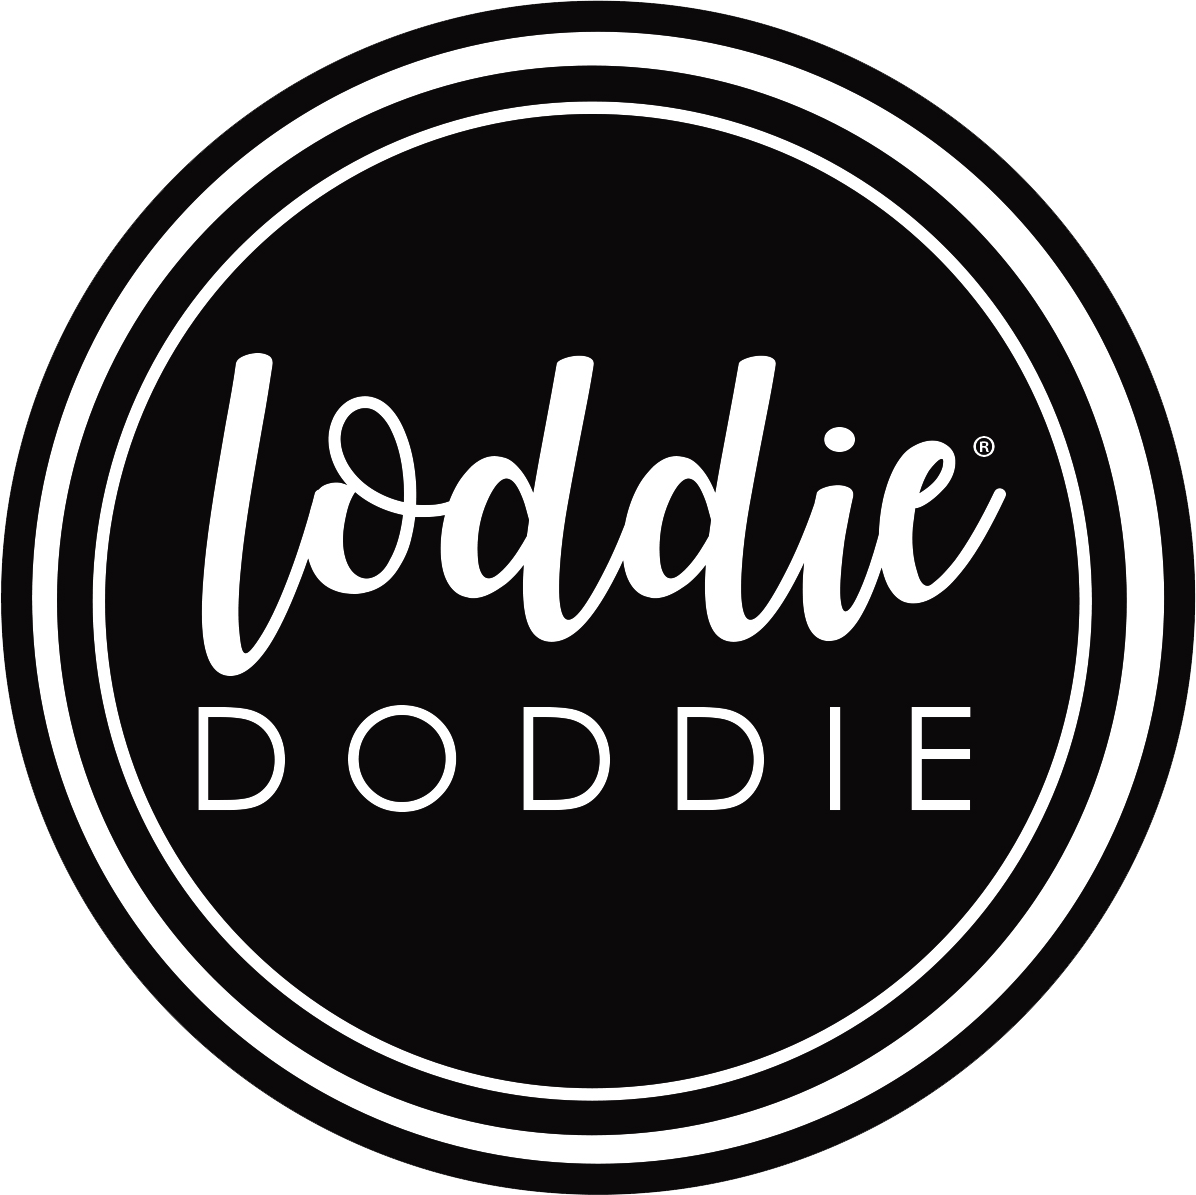 https://loddiedoddie.com/cdn/shop/files/LoddieDoddieLogo_HiRes_1196x.png?v=1624828574